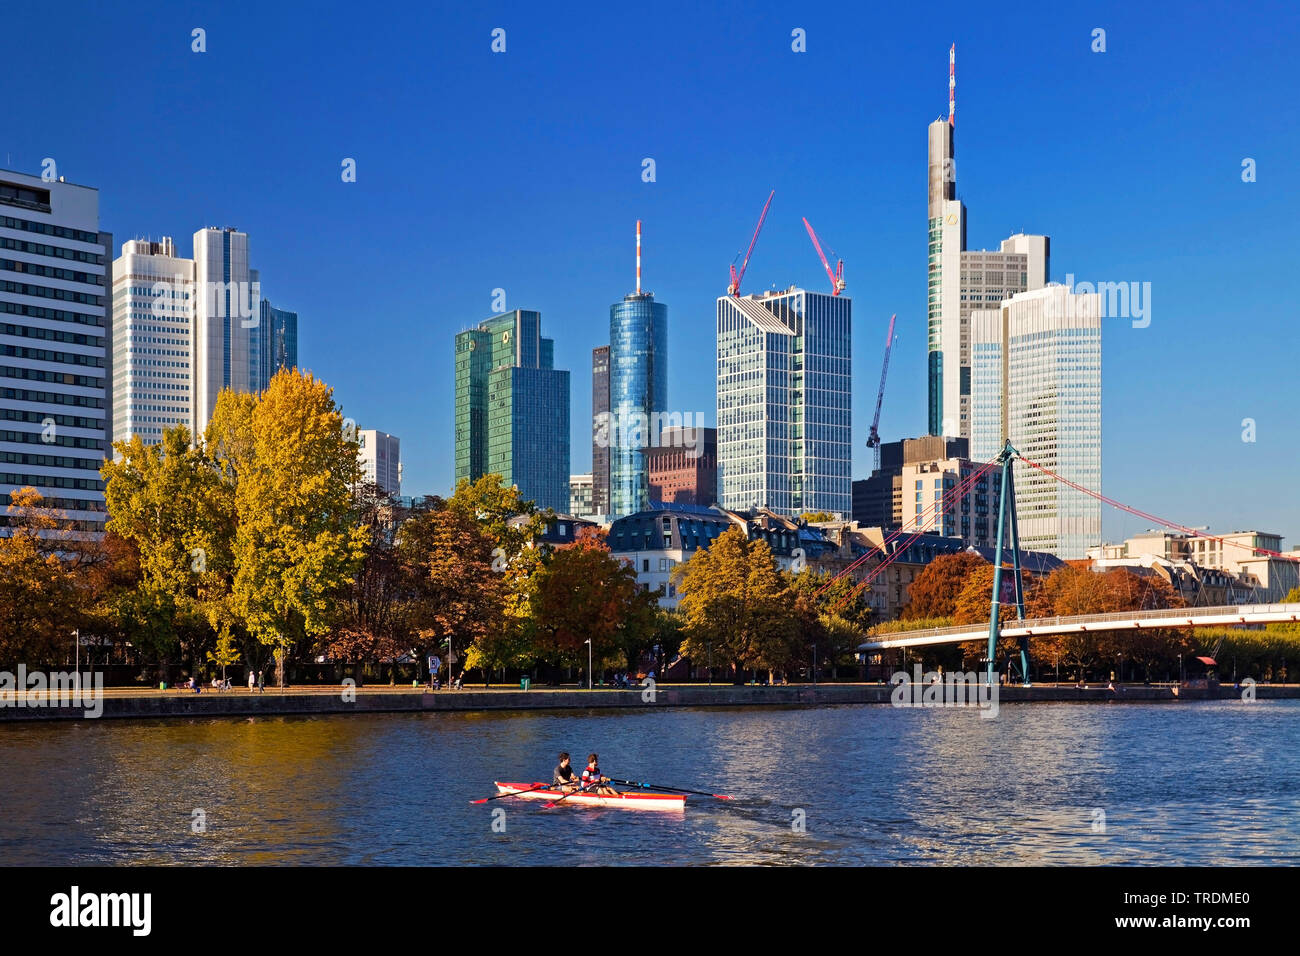 Canotto sul principale, blocchi a torre del quartiere finanziario in background, Germania, Hesse, Frankfurt am Main Foto Stock